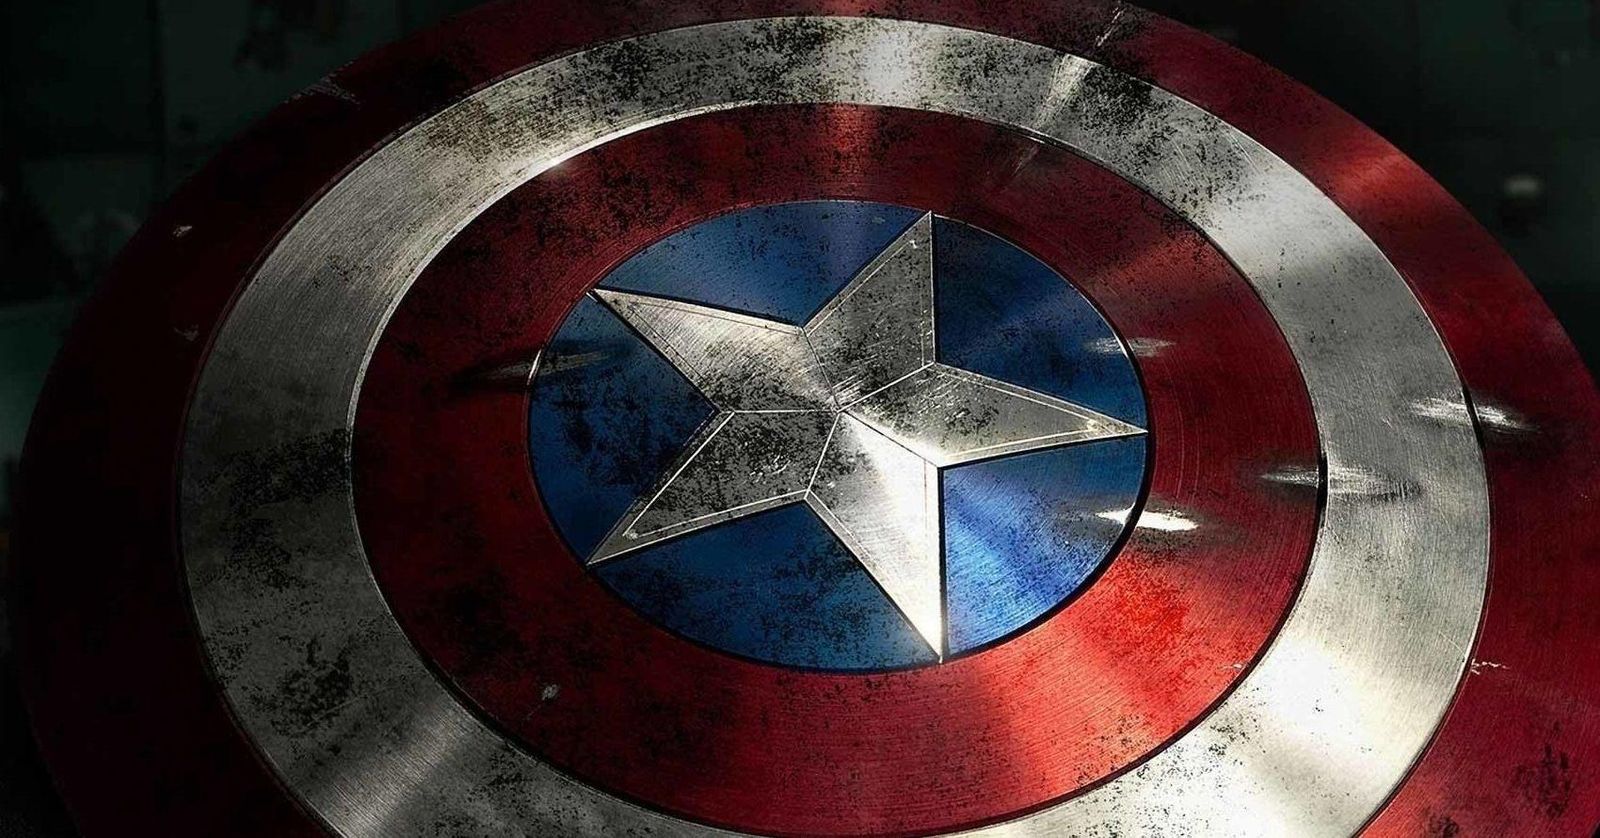  Escudo usado por Capitão América no filme será sorteado entre fãs